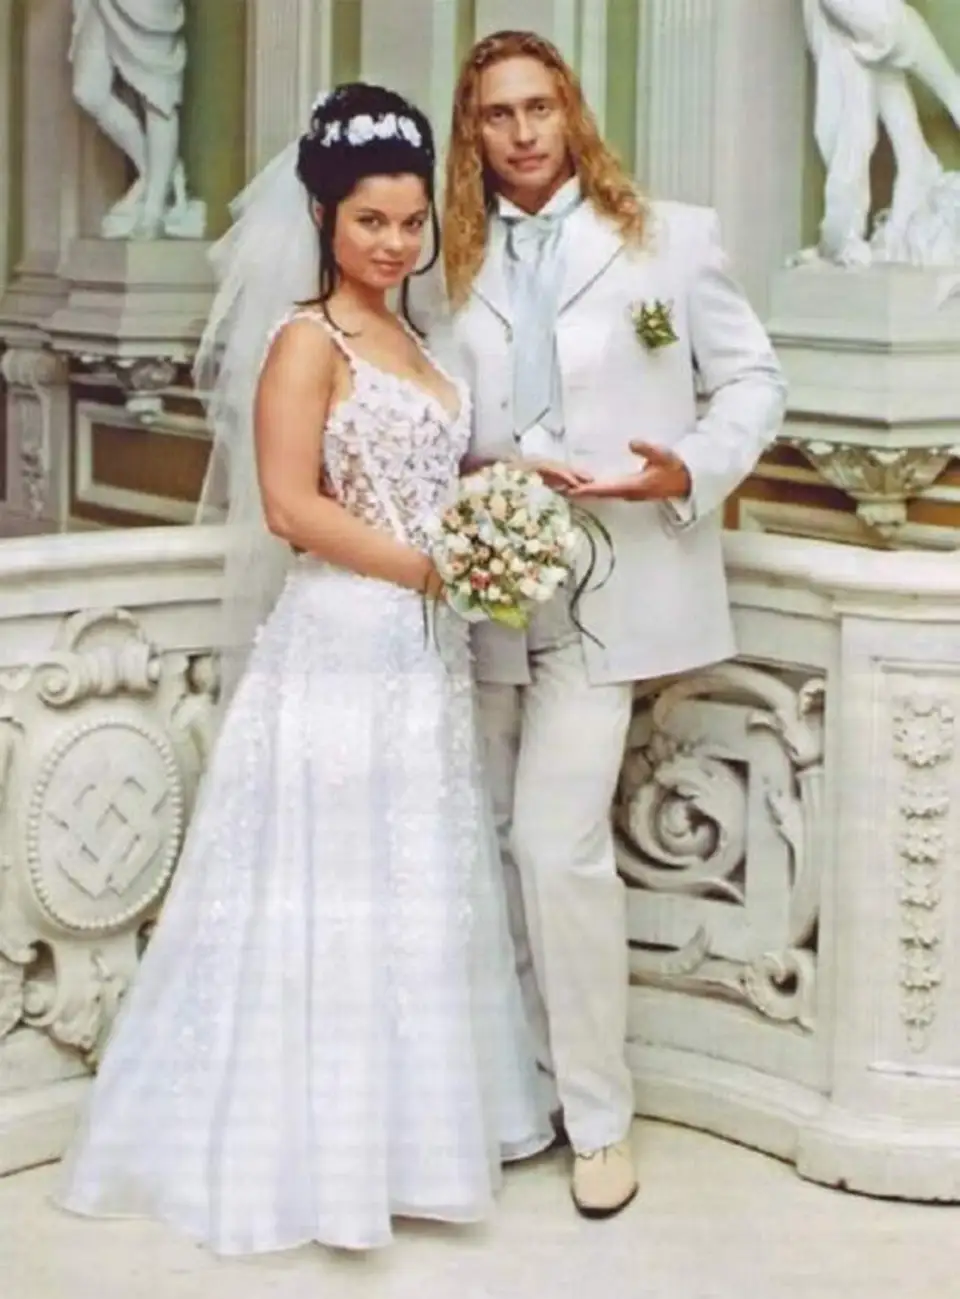 Сергей Глушко и Наташа Королева свадьба